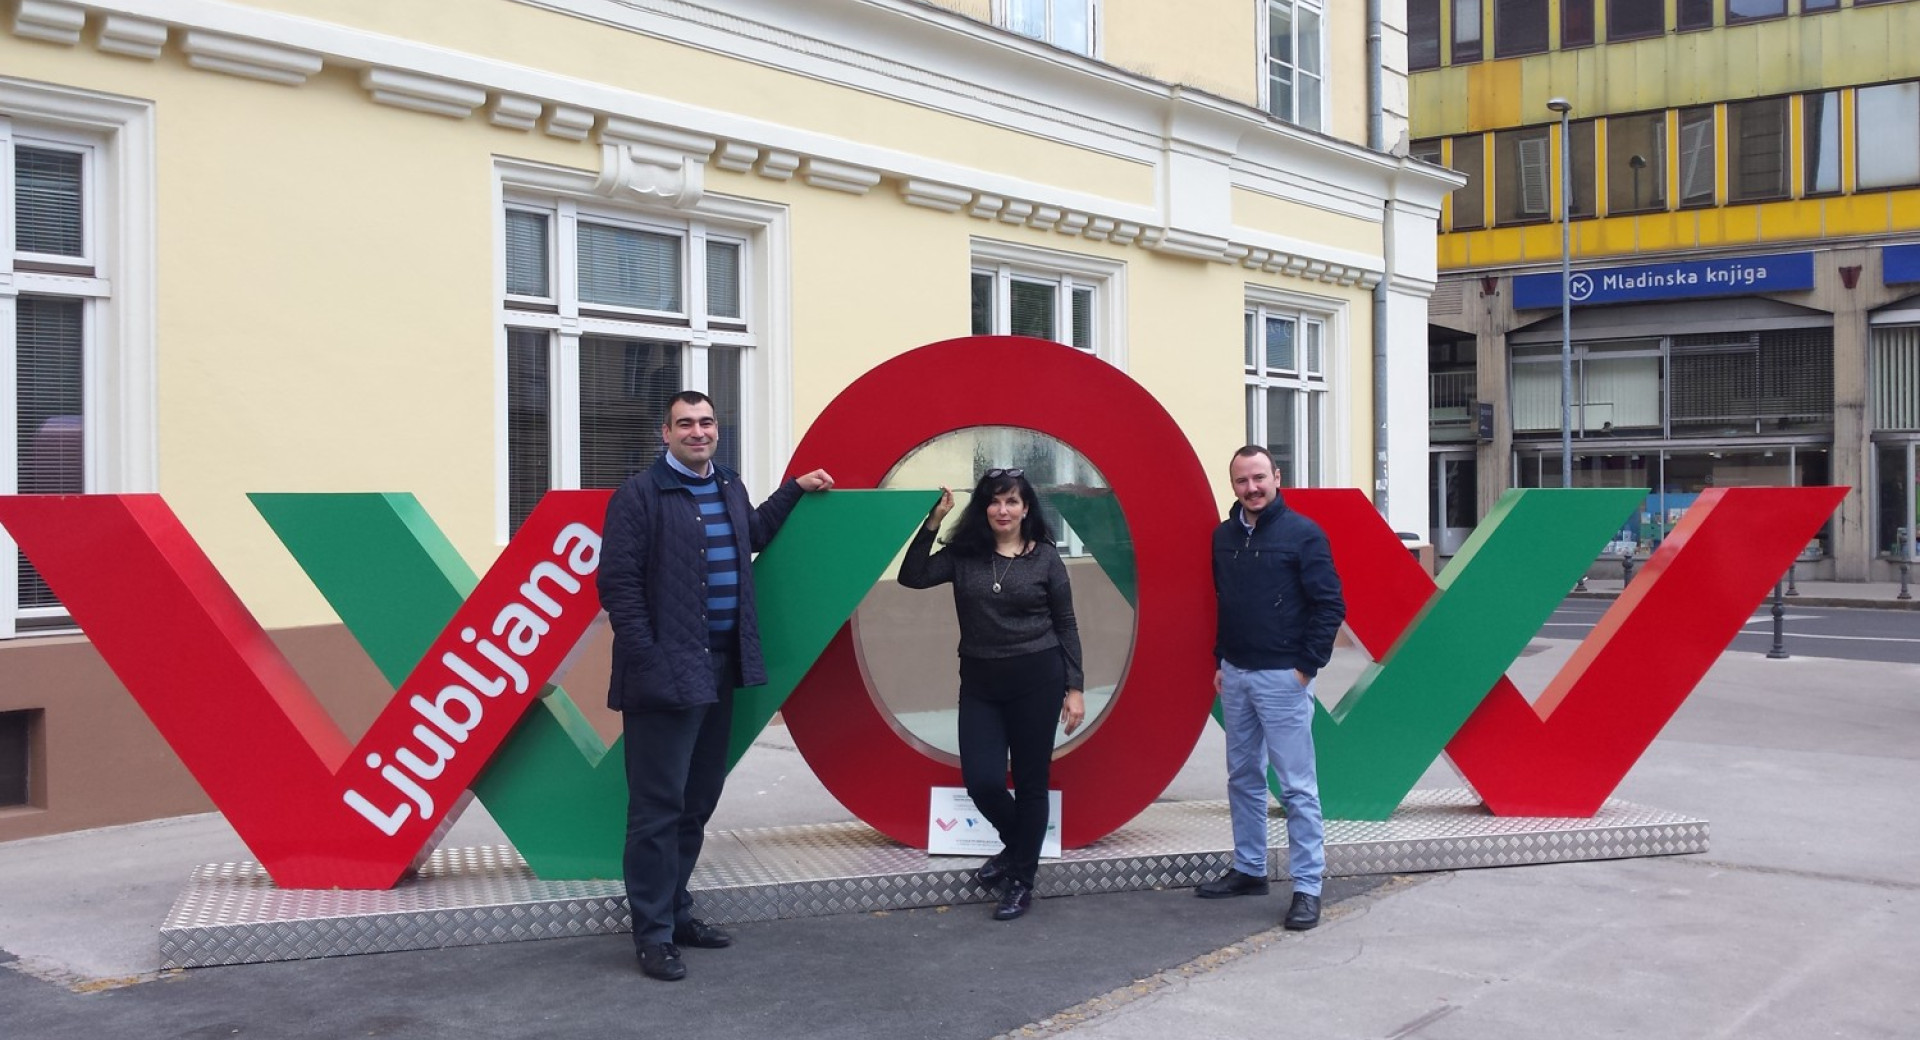 Predstavnica Turizma Ljubljana in predstavnika Dekon Group ob novi instalaciji WOW v Ljubljani.